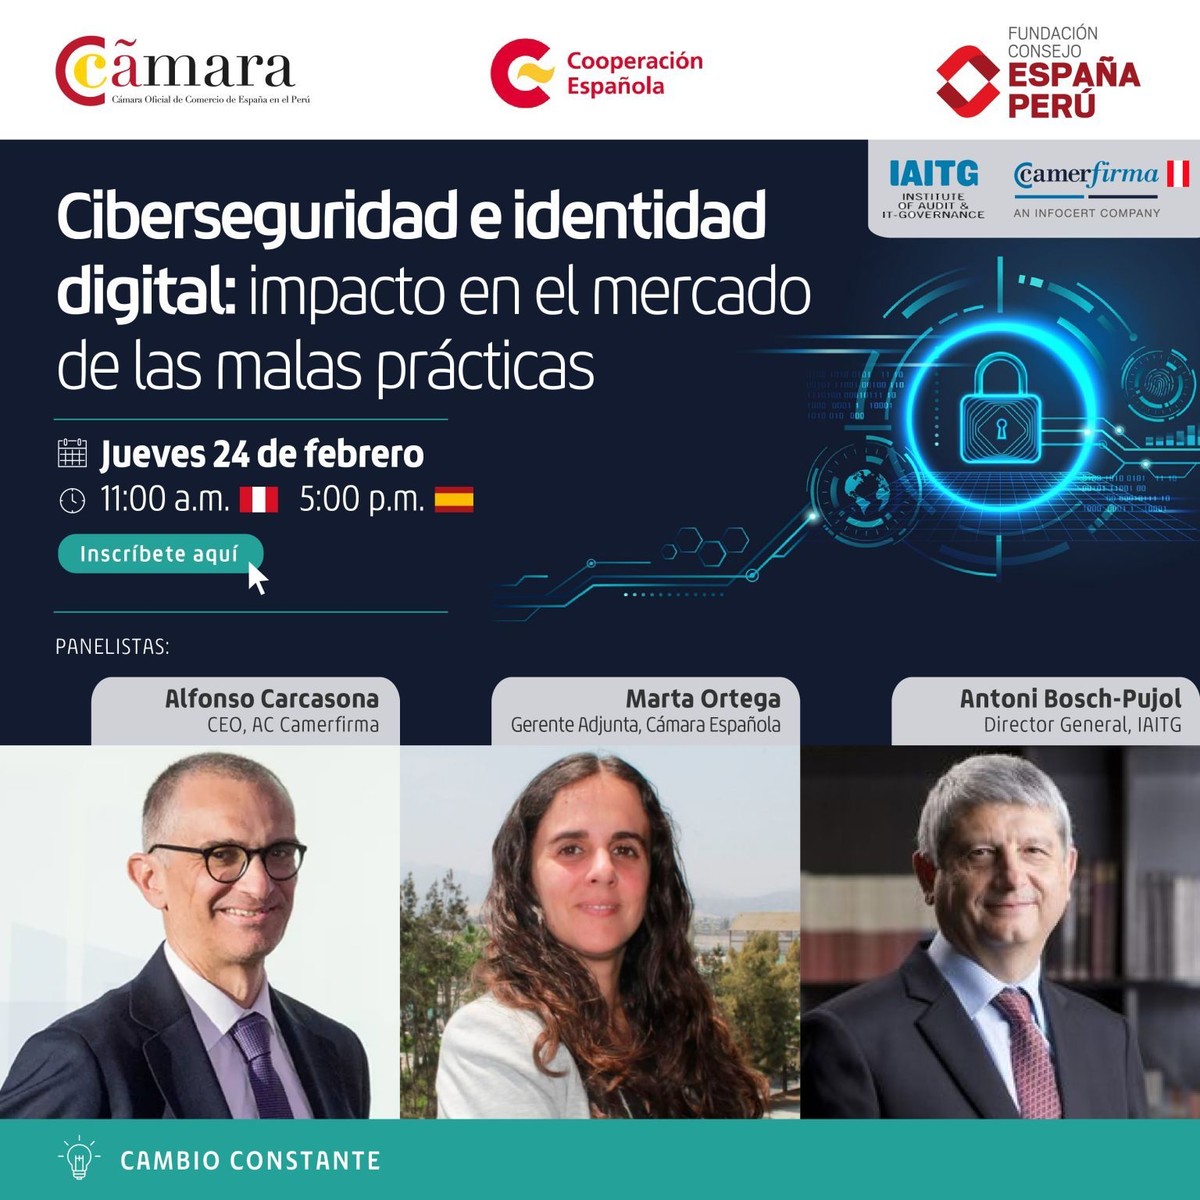 Ciberseguridad e identidad digital: impacto en el mercado de las malas prácticas